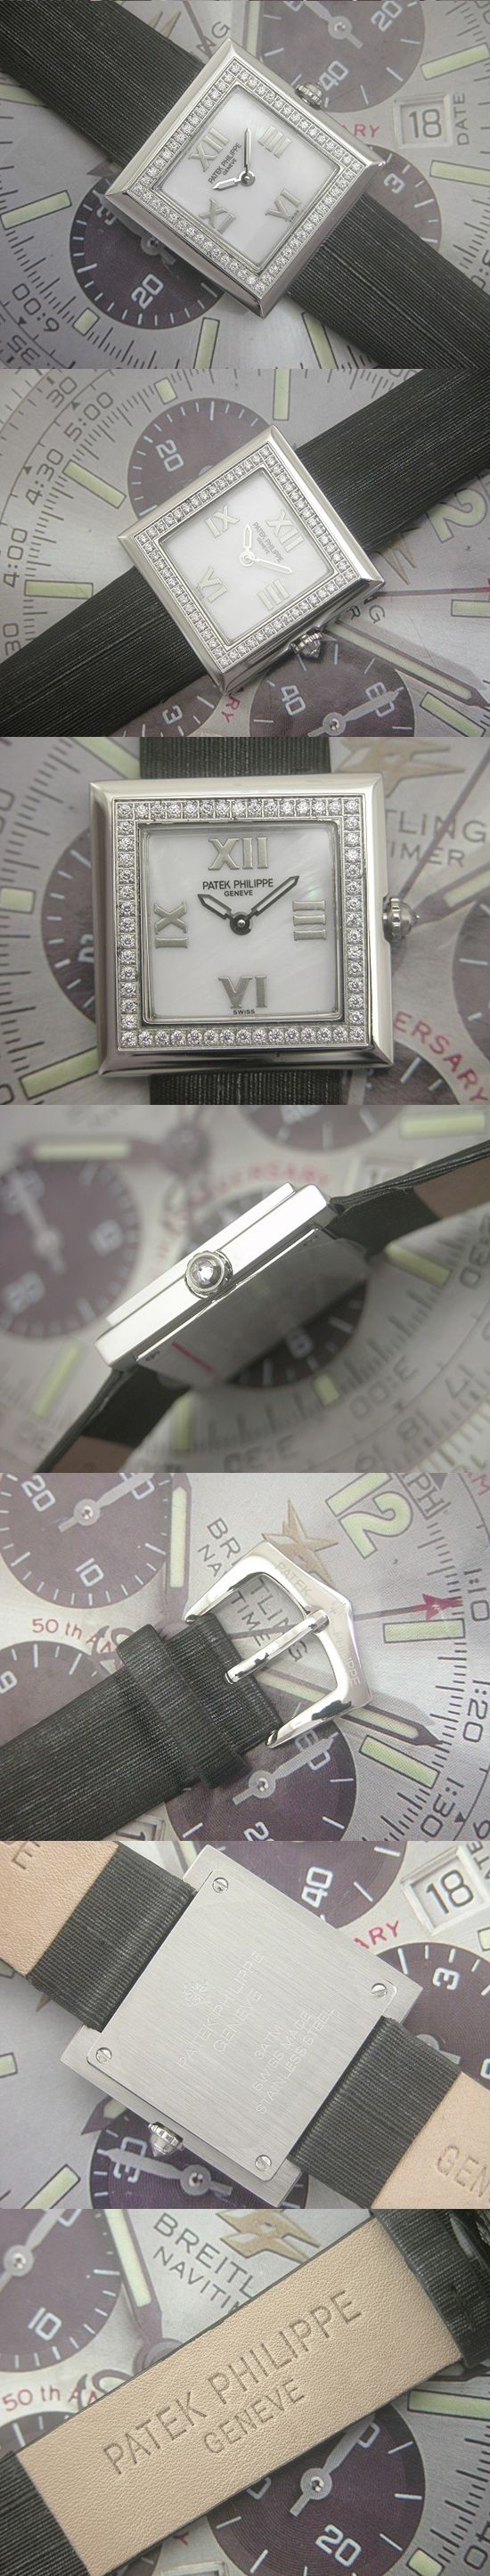 おしゃれなブランド時計がパテックフィリップ -ジュエリー-PATEK PHILIPPE-4869-ae-女性用を提供します.